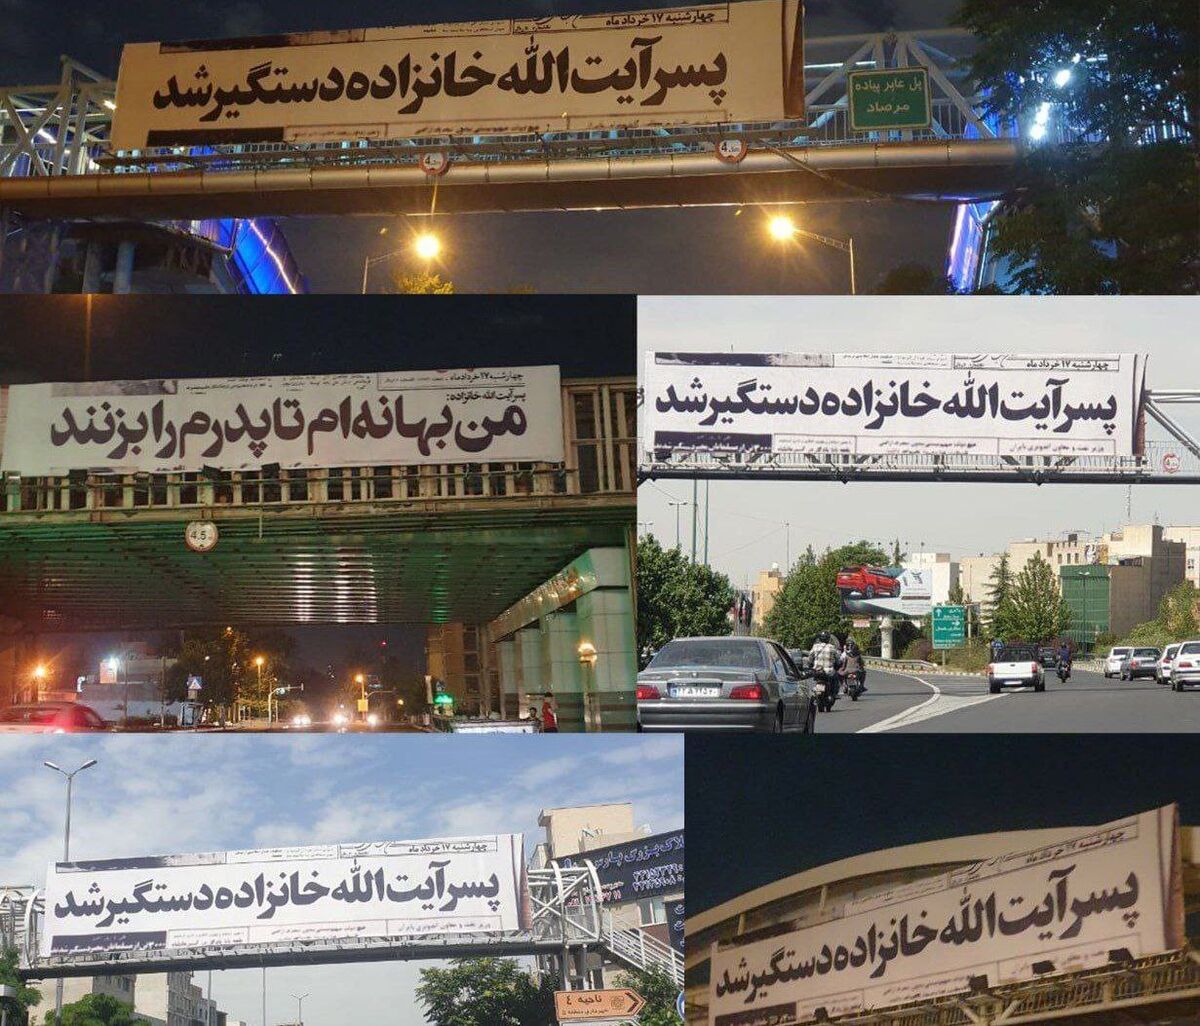 داستان بیلبوردهای جنجالی تهران چه بود؟!
